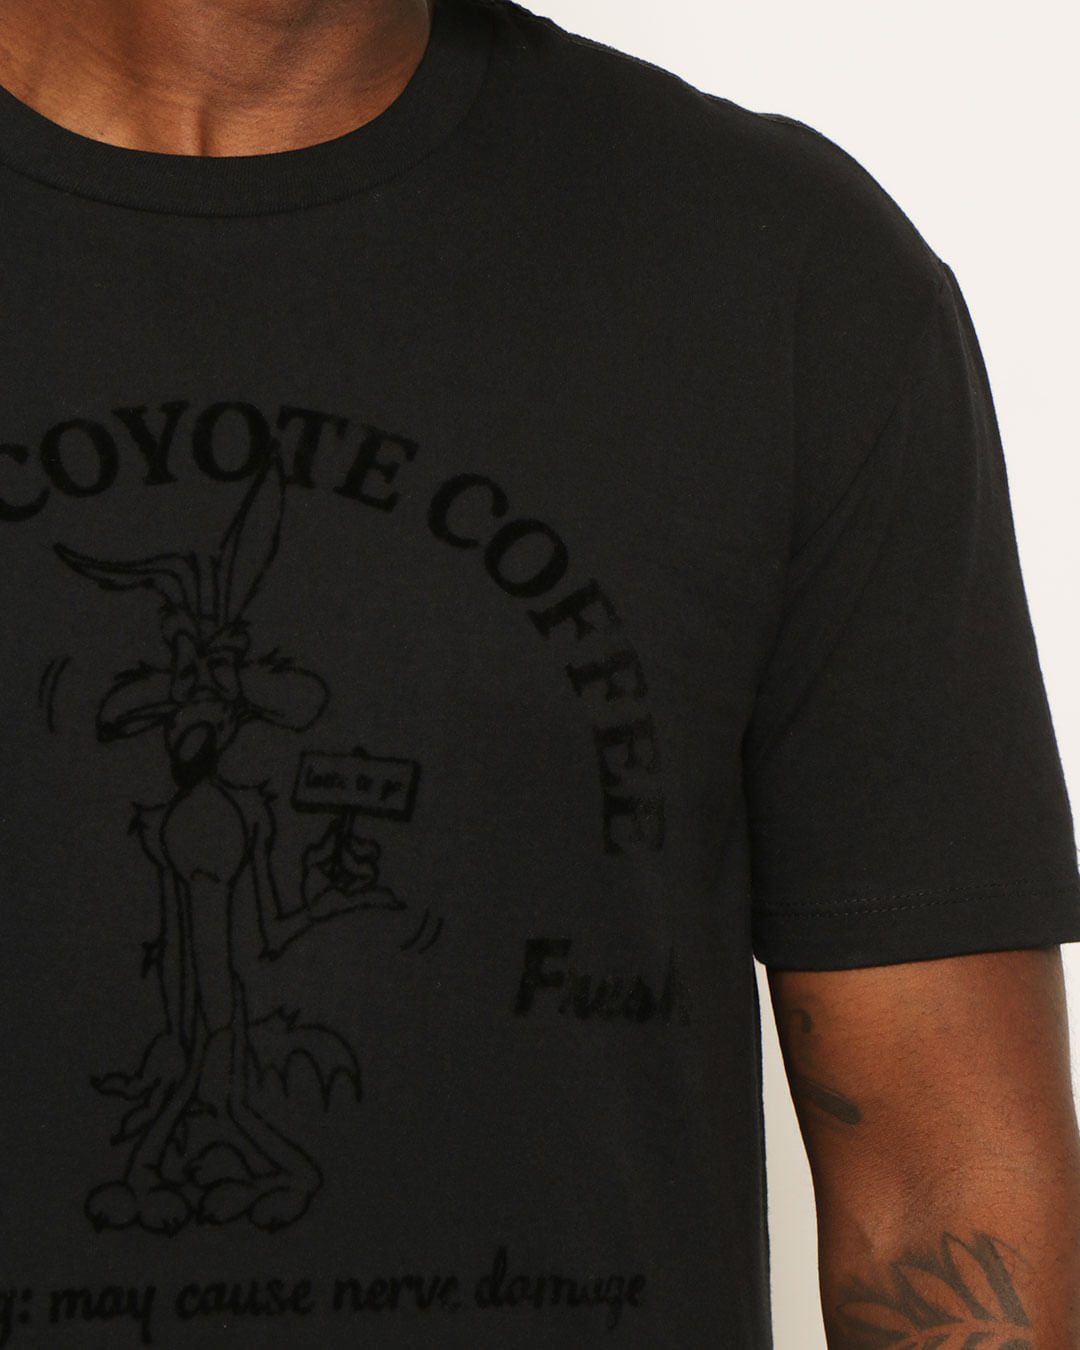 Camiseta-Coyote-Trw121610-Pgg---Preto